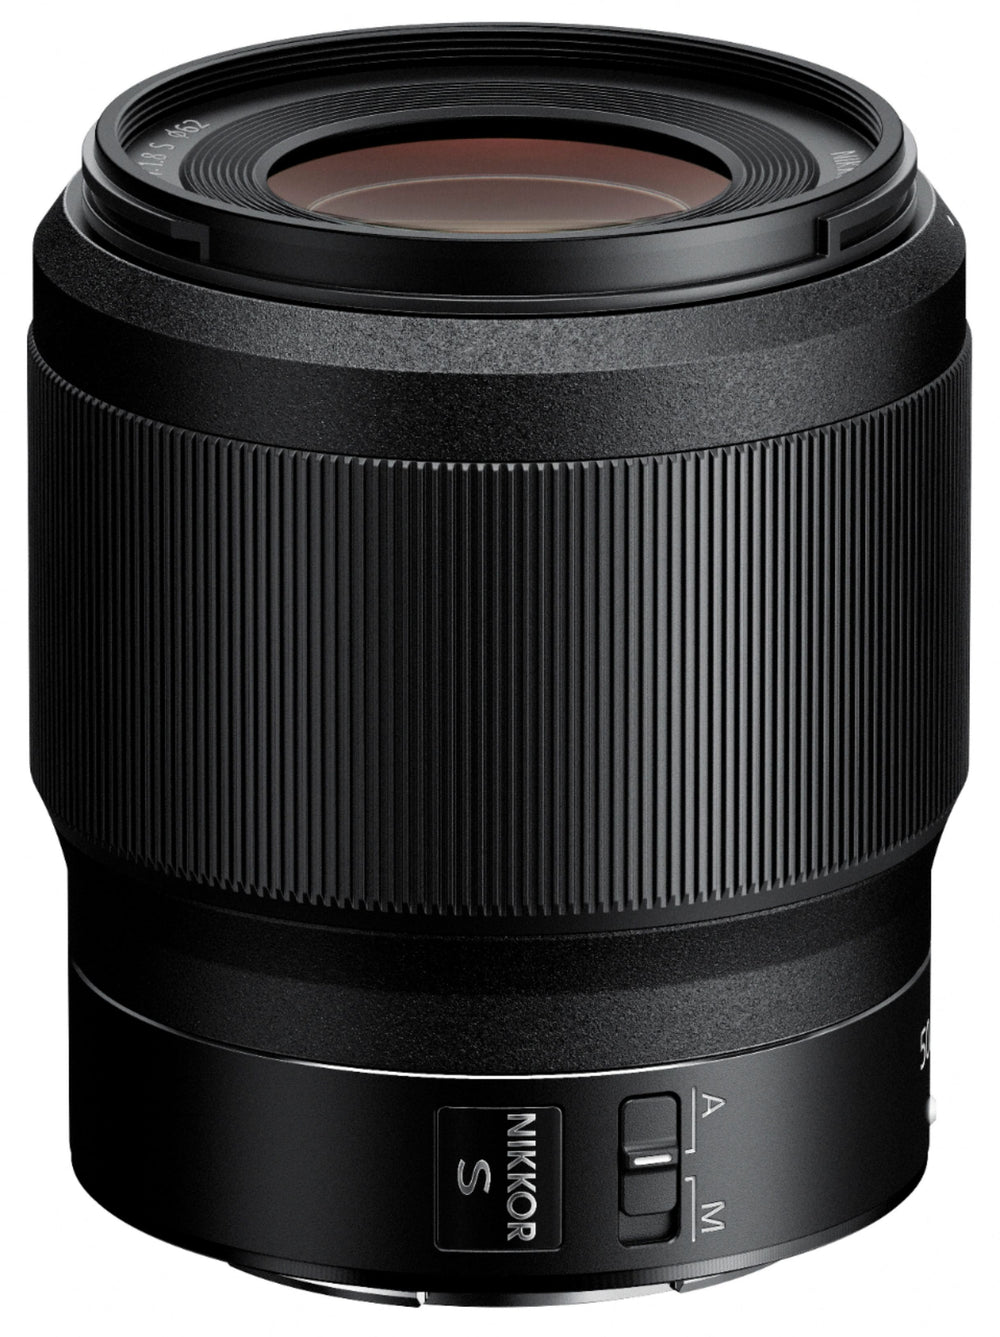 NIKKOR Z 50mm f/1.8 S Standard Prime Lens for Nikon Z Cameras - Black_1